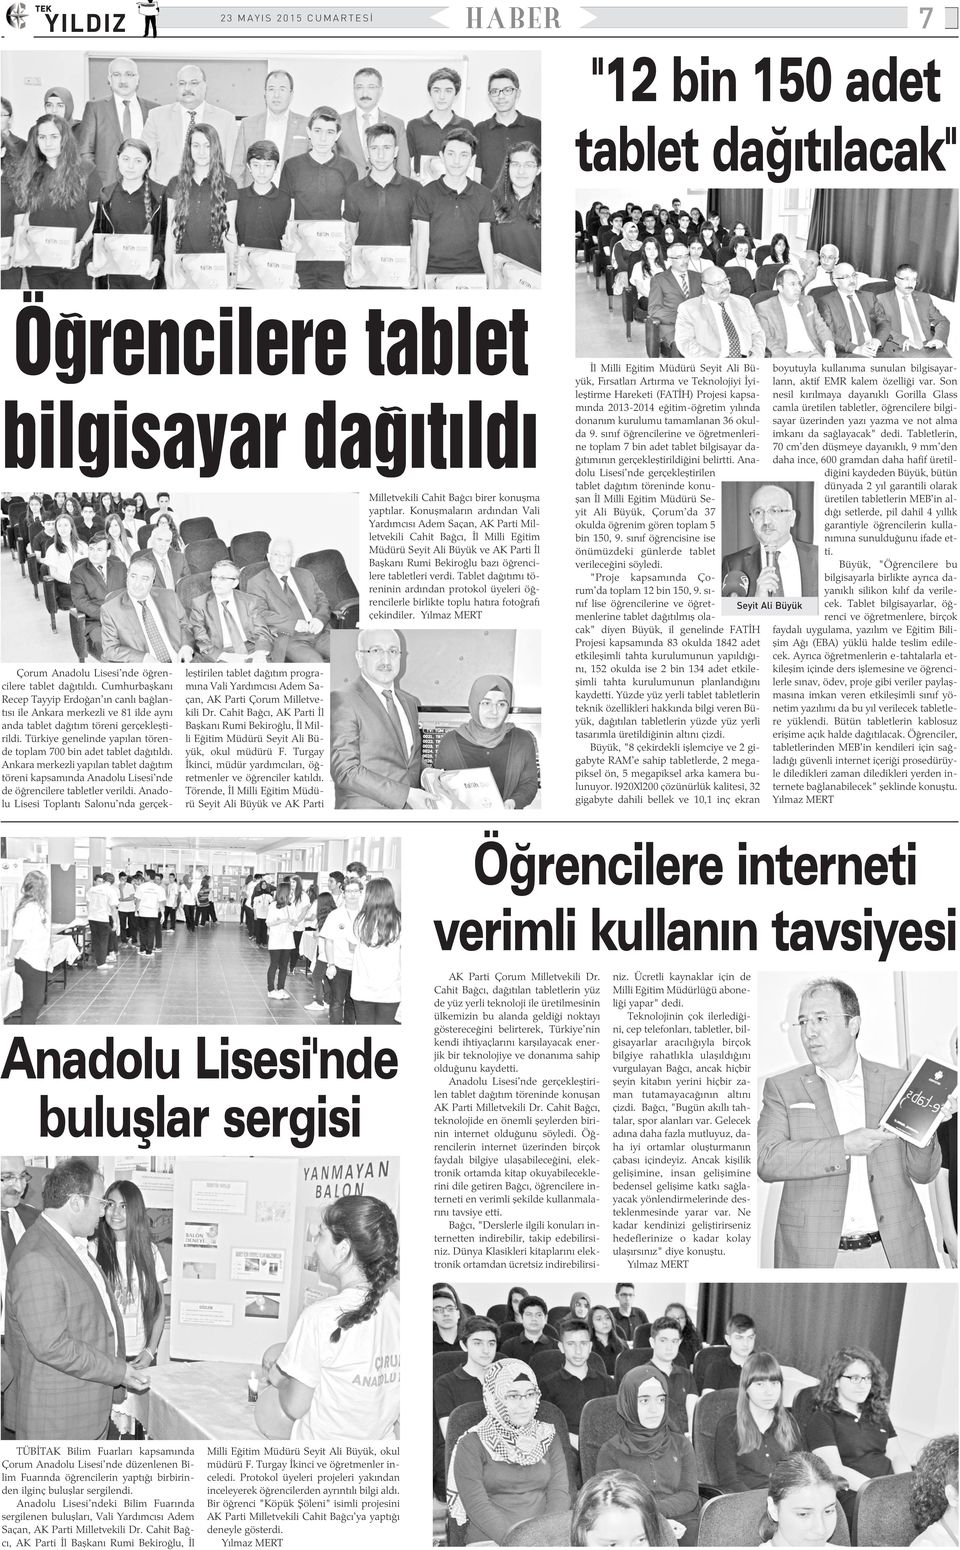 Türkiye genelinde yapýlan törende toplam 700 bin adet tablet daðýtýldý. Ankara merkezli yapýlan tablet daðýtým töreni kapsamýnda Anadolu Lisesi'nde de öðrencilere tabletler verildi.